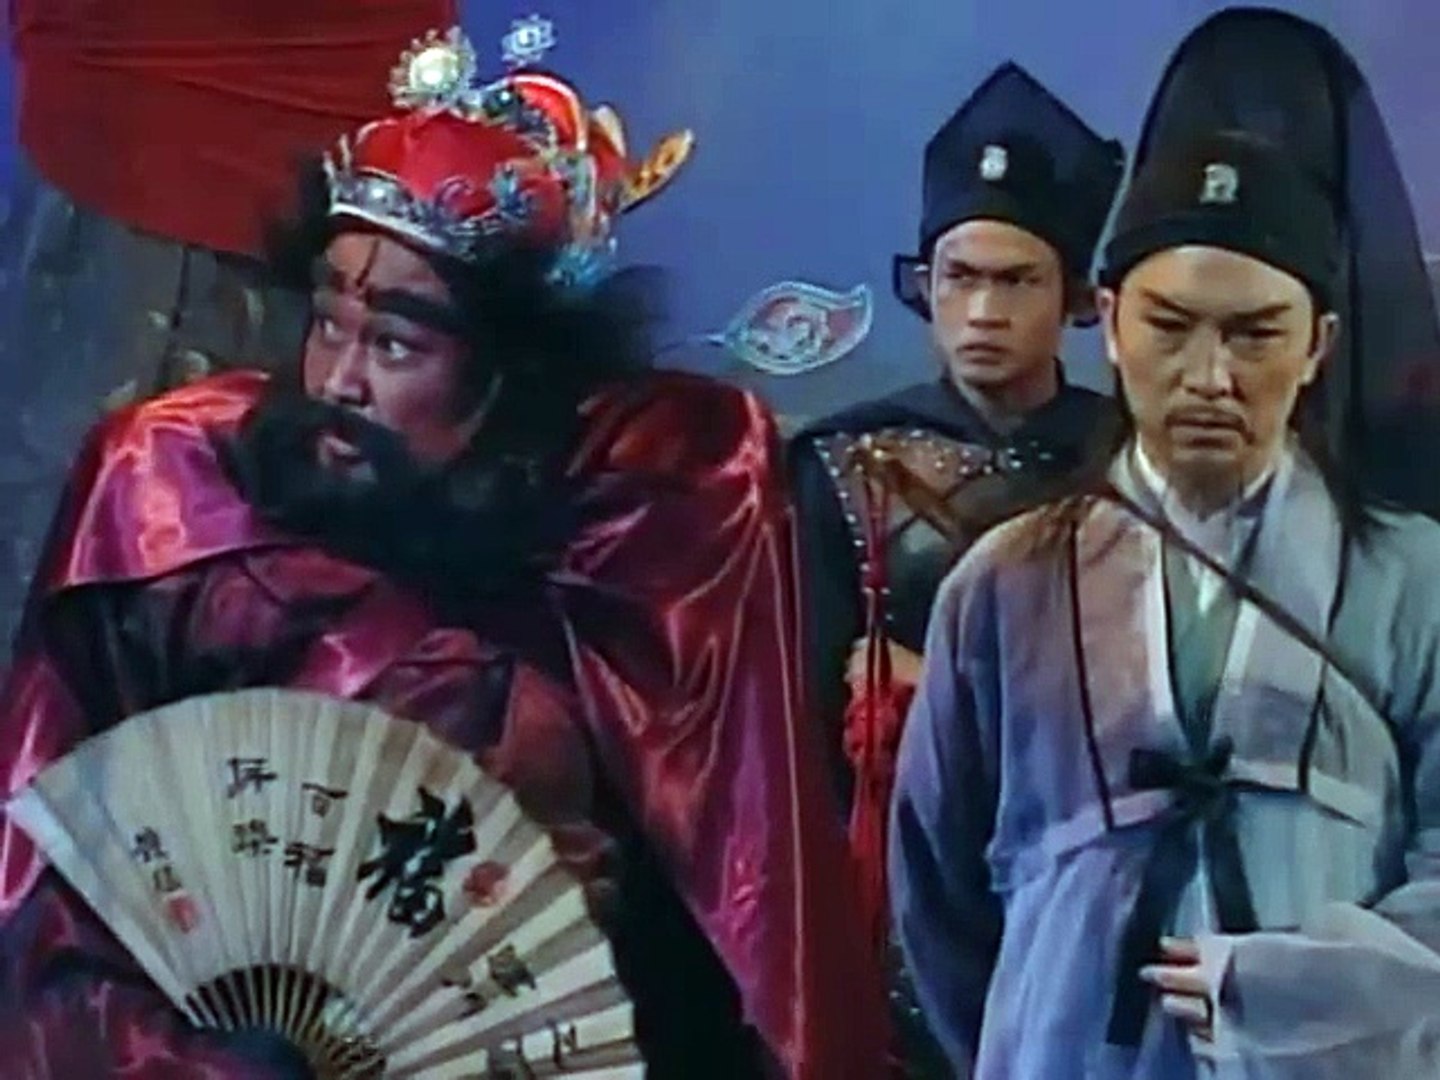 Thiên Sứ Chung Quỳ 1994 - Tập 14 (Lồng Tiếng) - Phim Kiếm Hiệp TVB